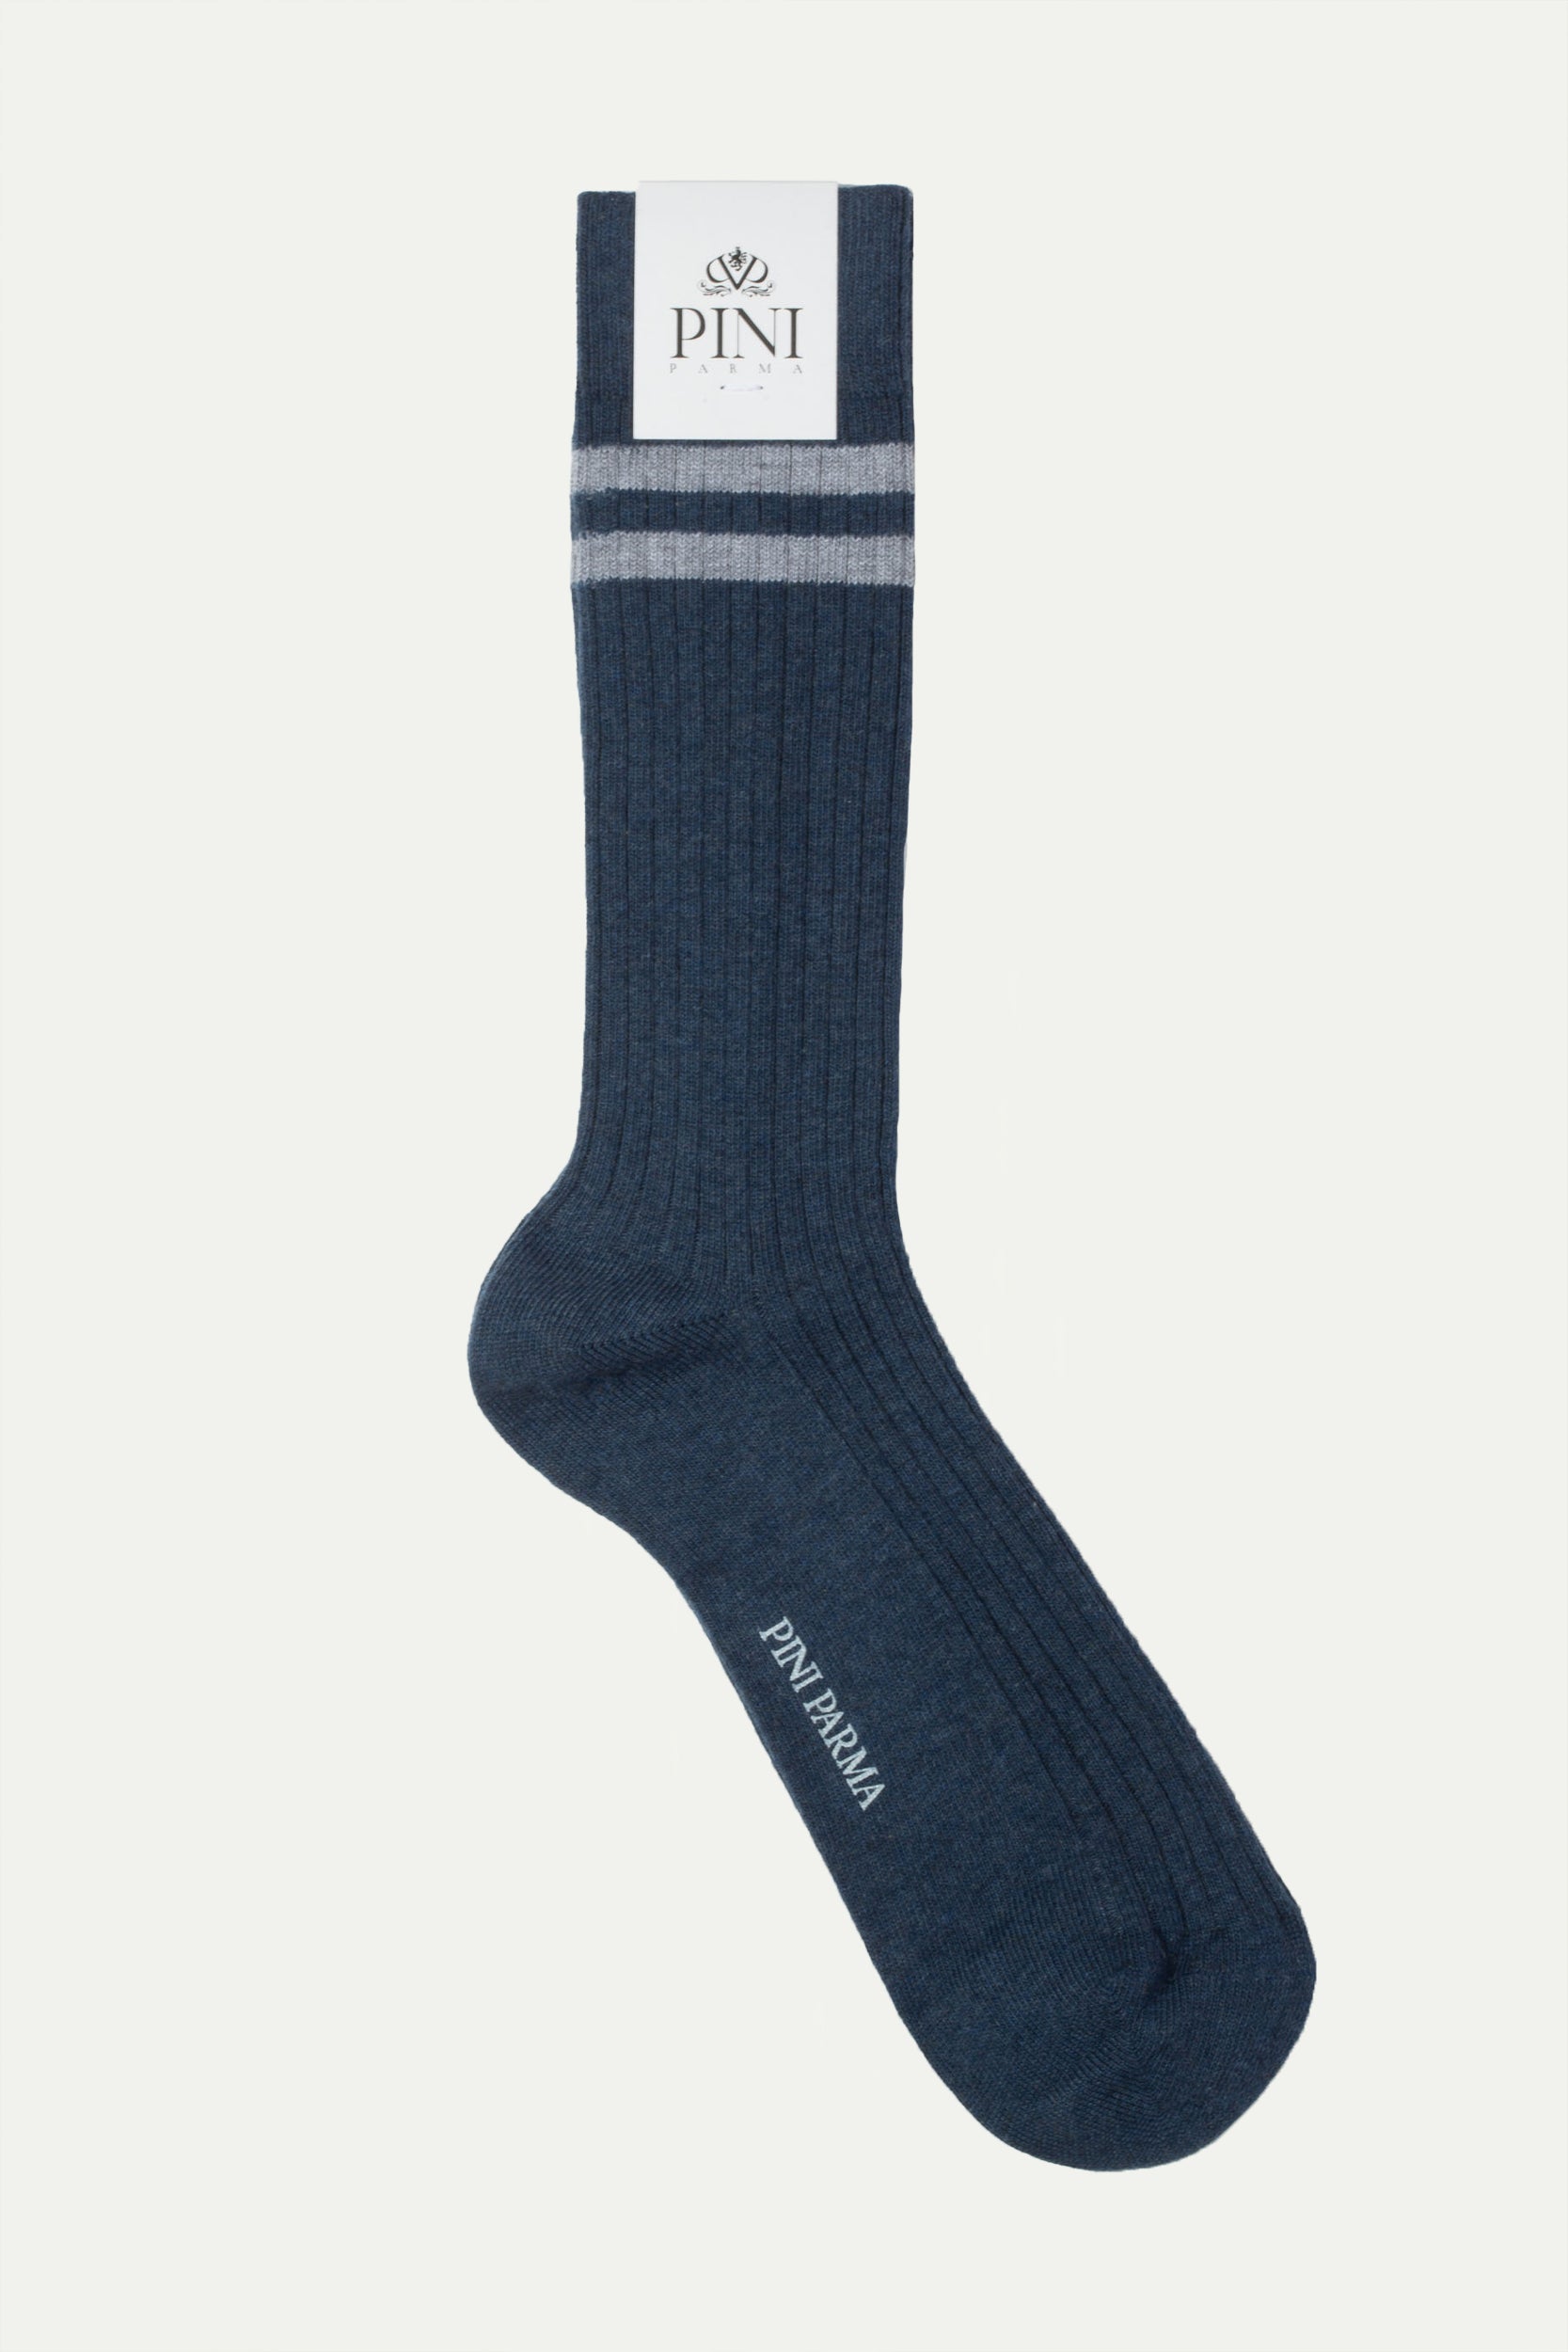 Avio sport socks - Made in Italy